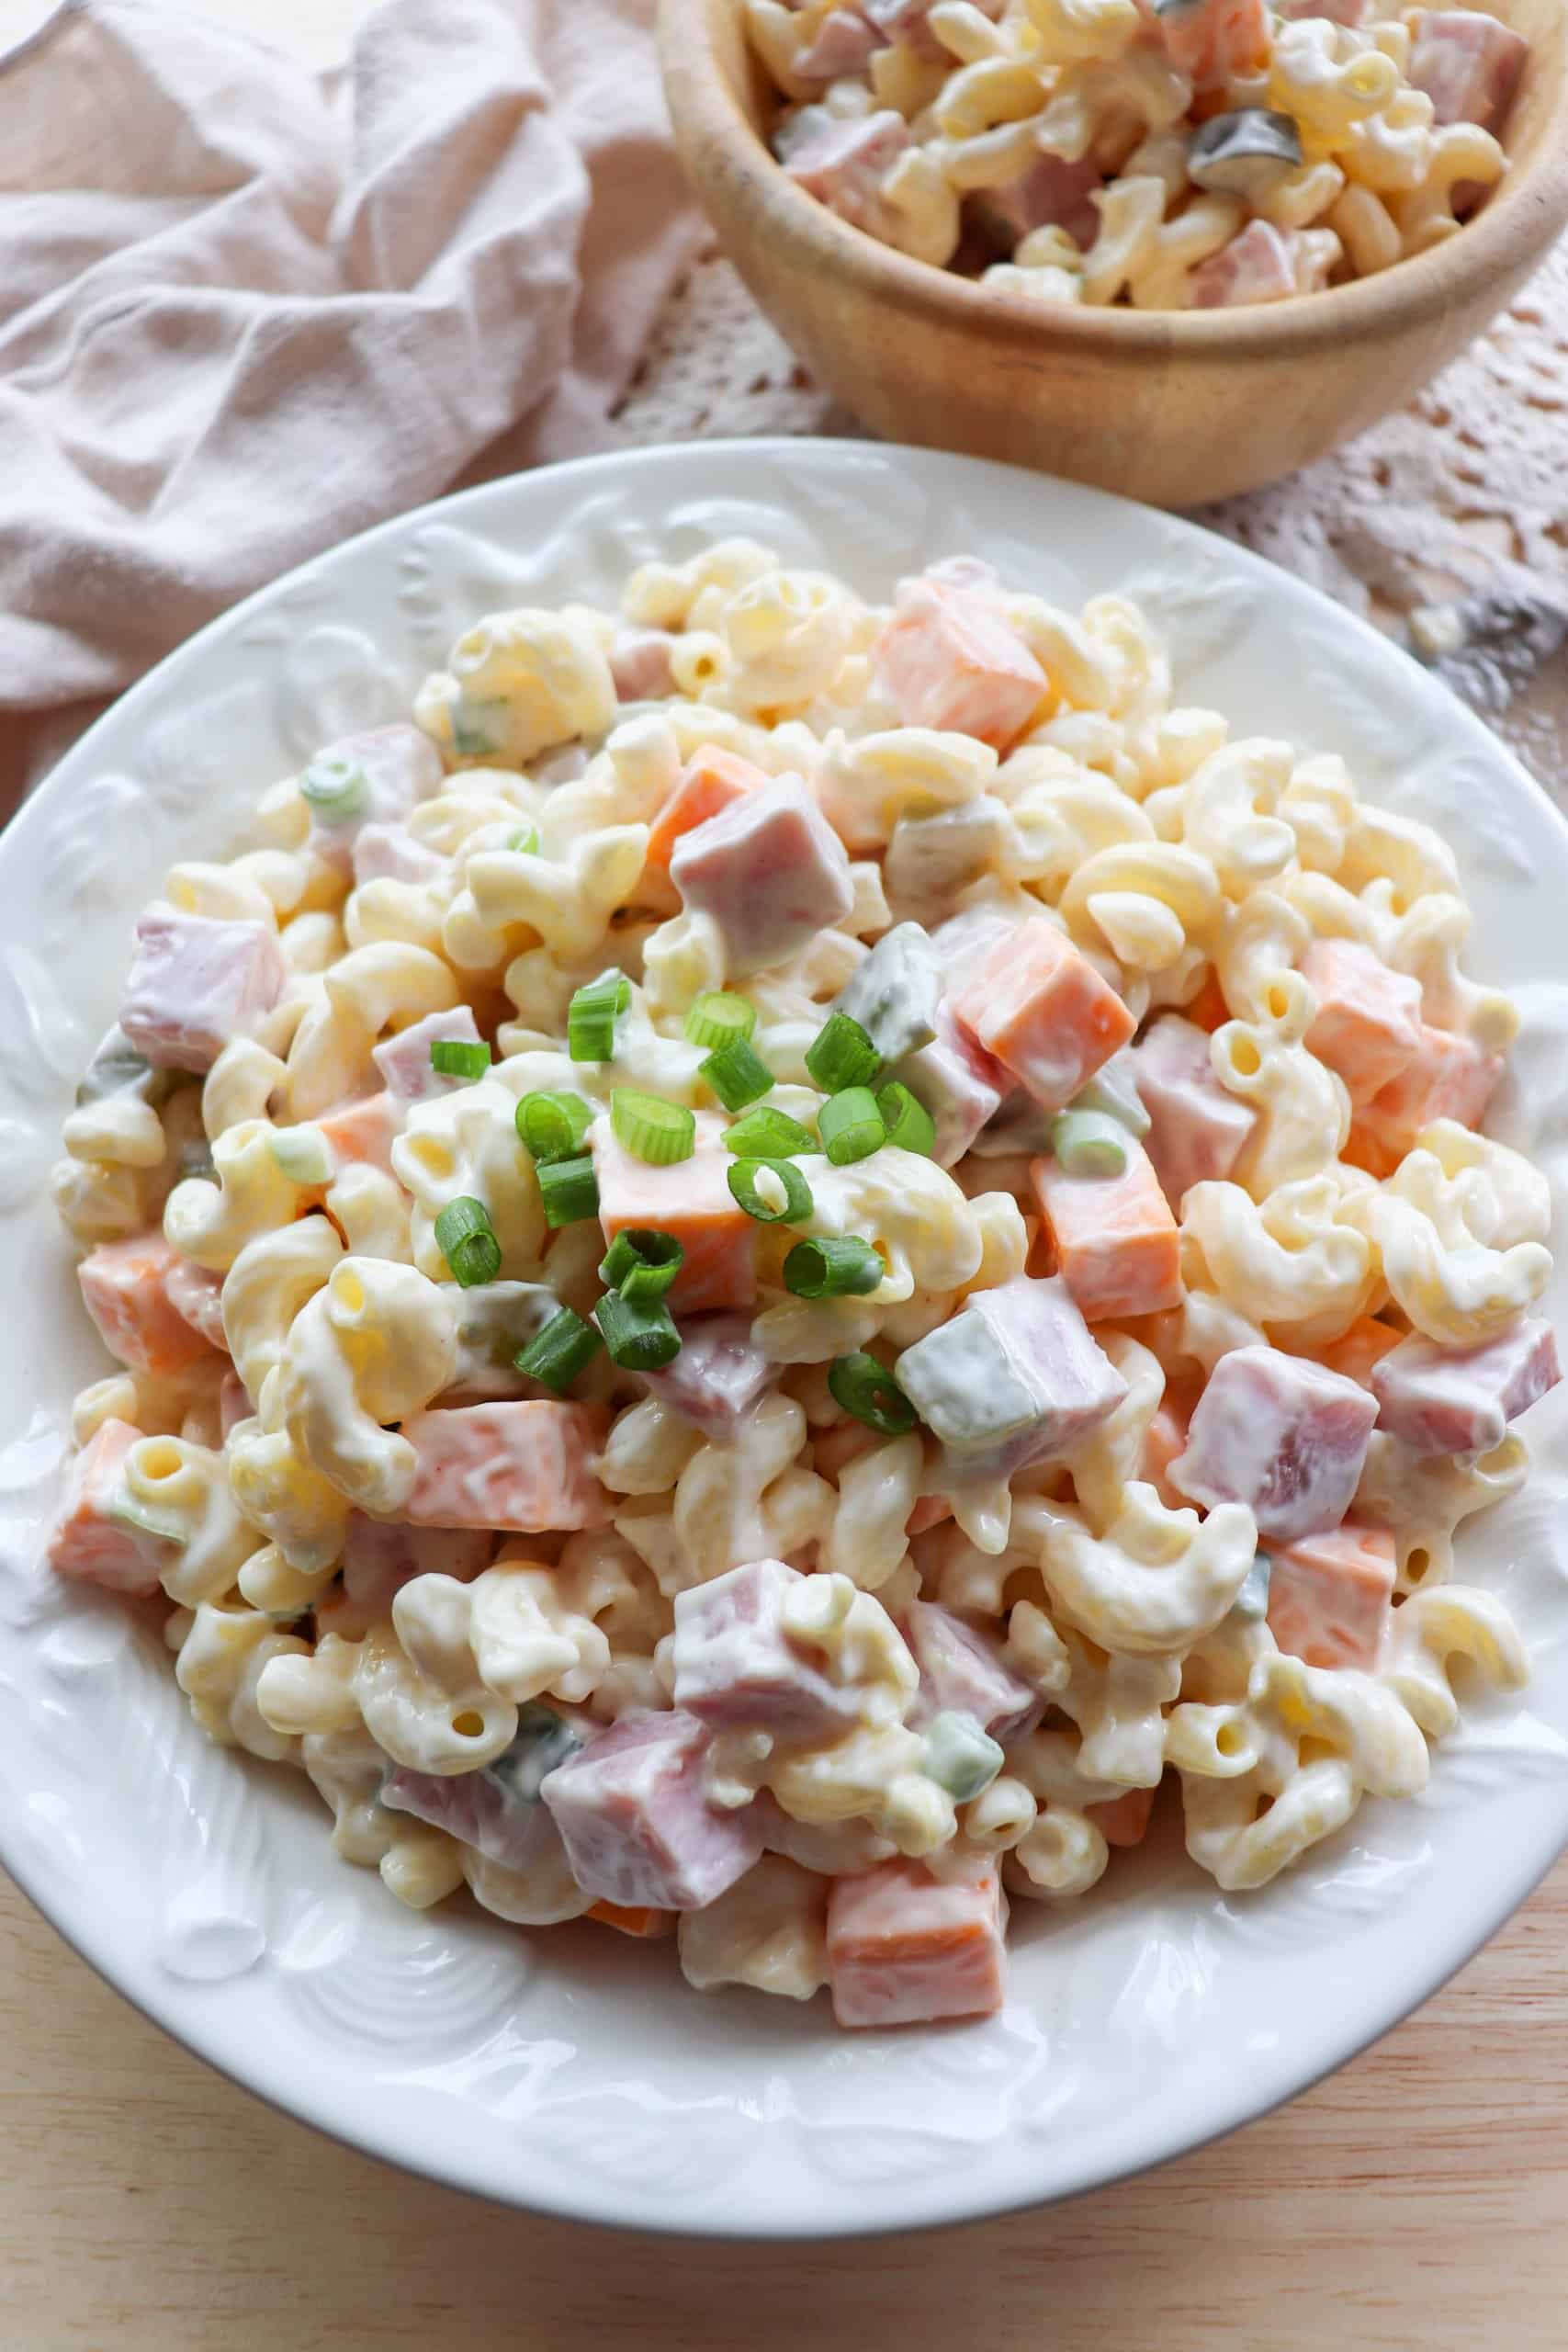 Ham & Cheese Pasta Salad Recipe